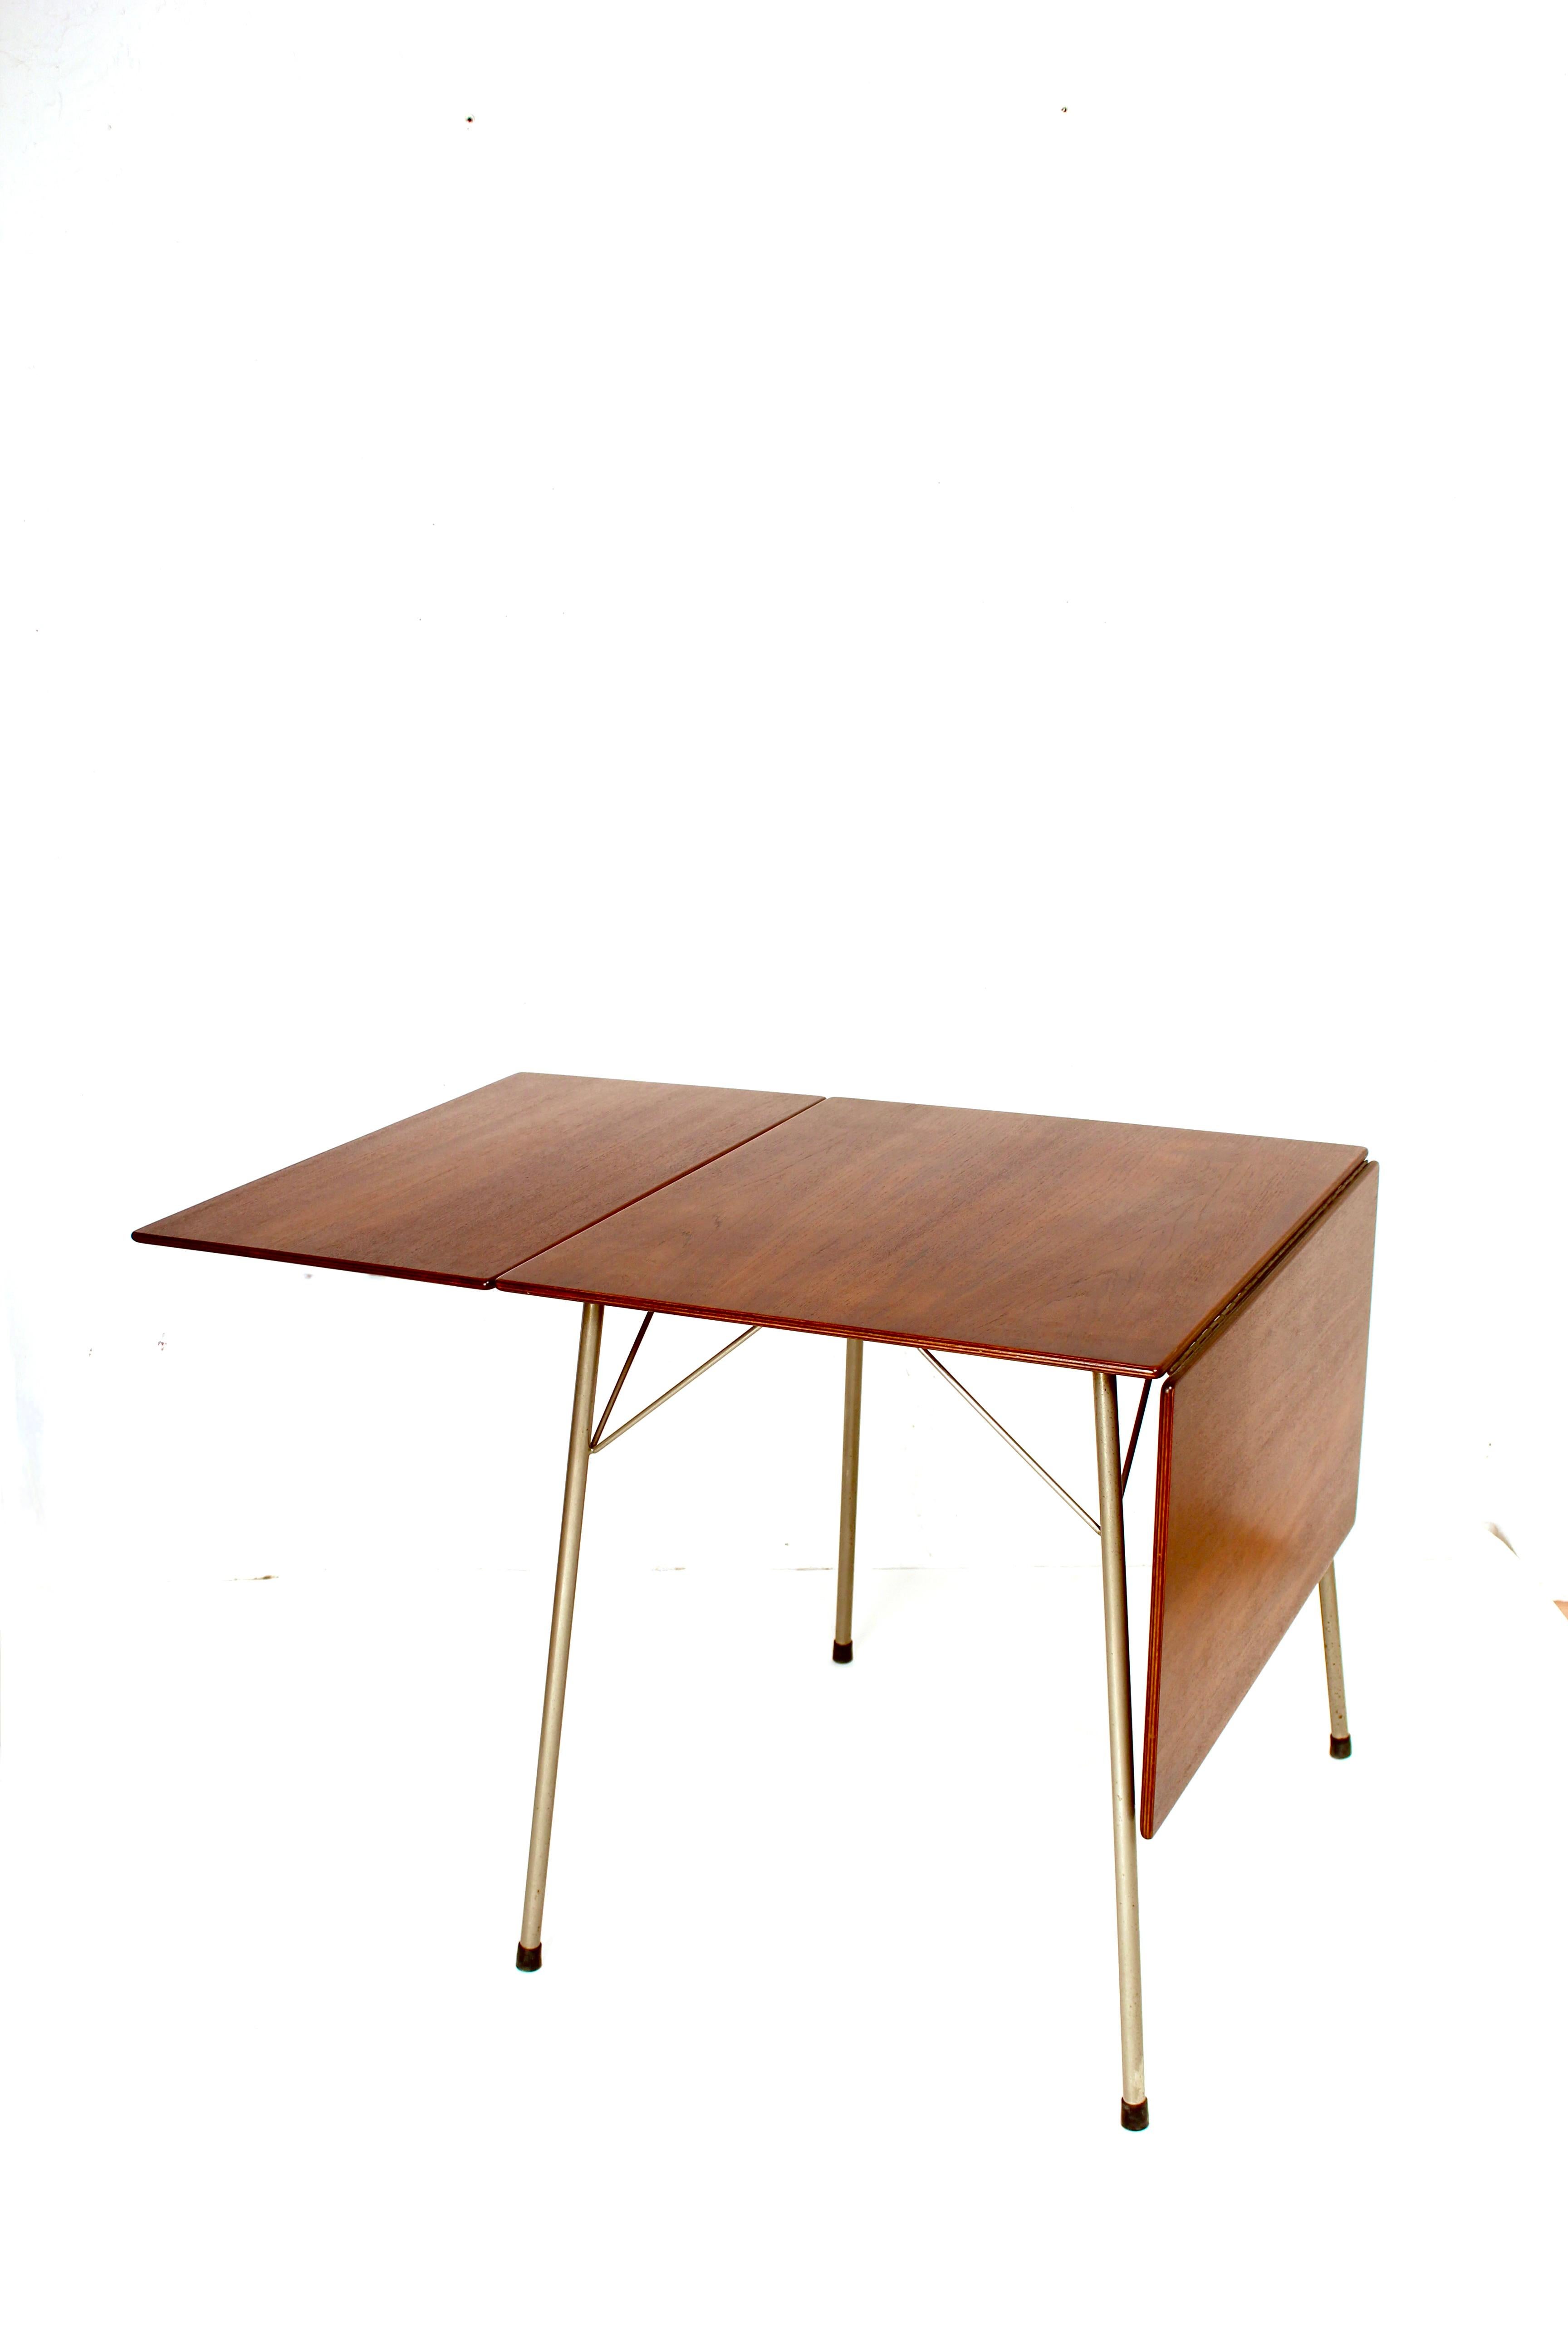 Belle petite table à abattant modèle 3601 conçue par Arne Jacobsen pour Fritz Hansen, Danemark, 1952. Cette table a un plateau pliable en bois de teck et des pieds en métal tubulaire chromé. Cette table rare est de très belle taille et facile à